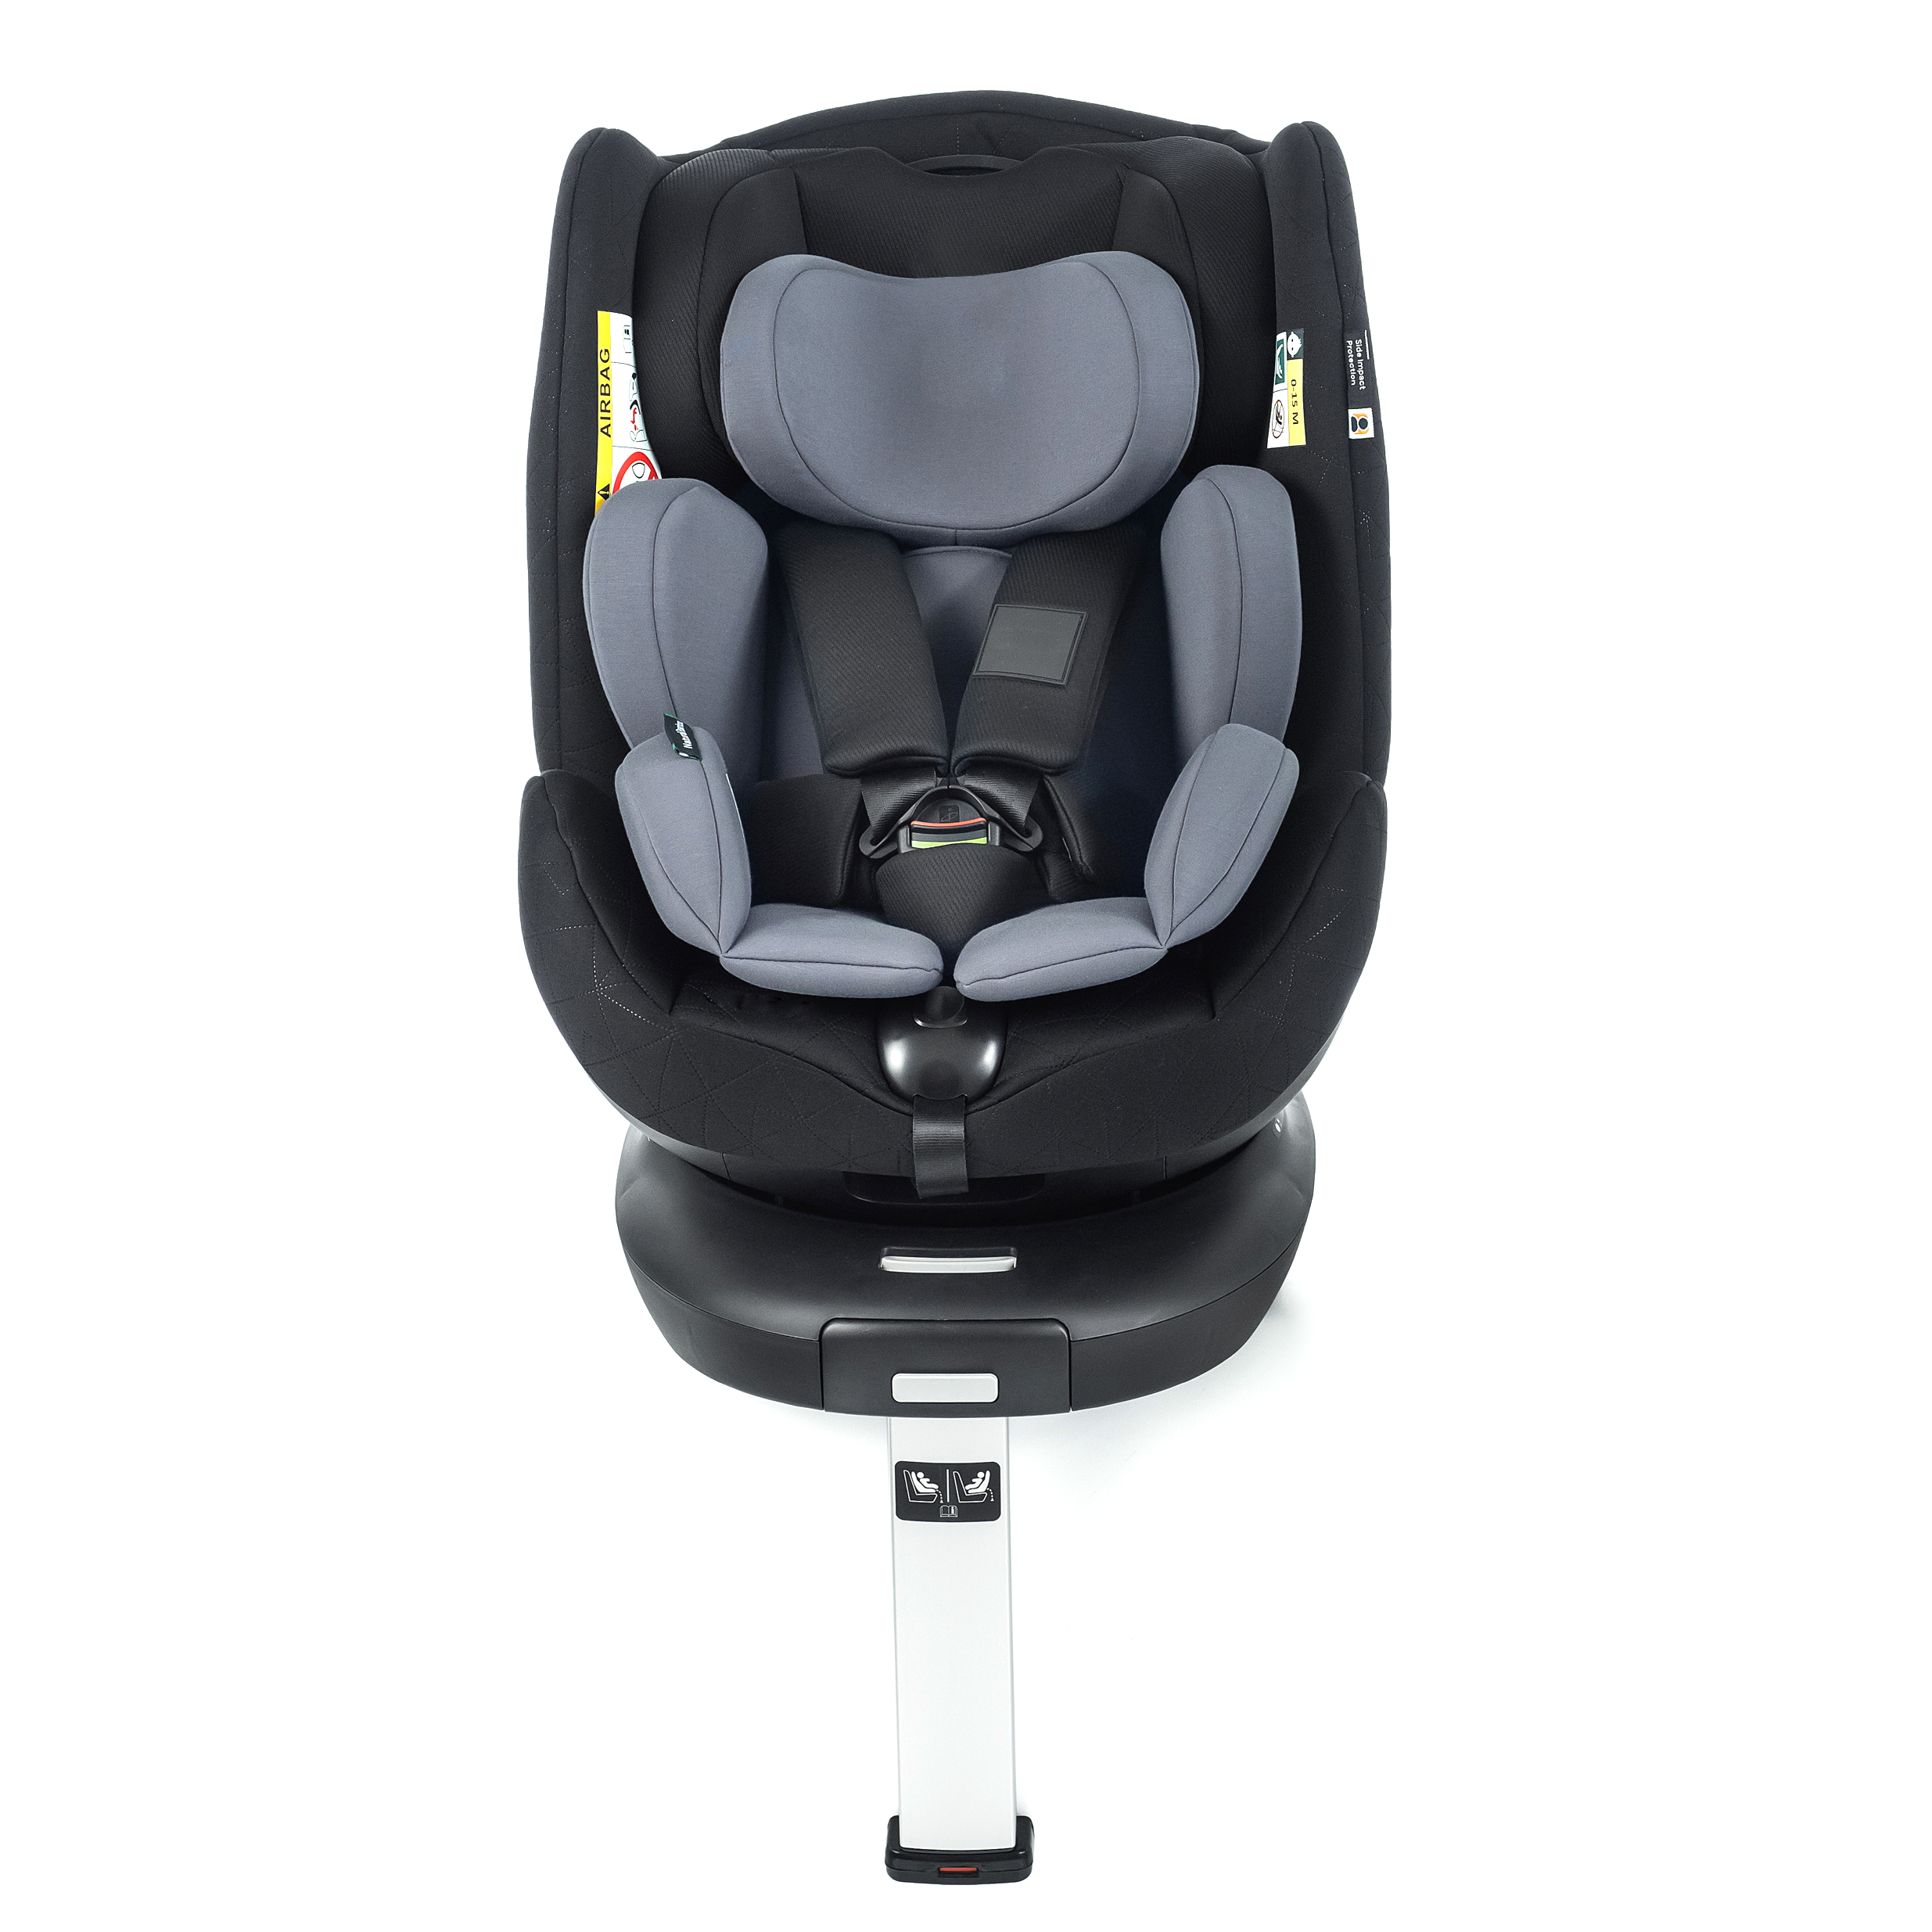 YKO - 629 Child Car Seat